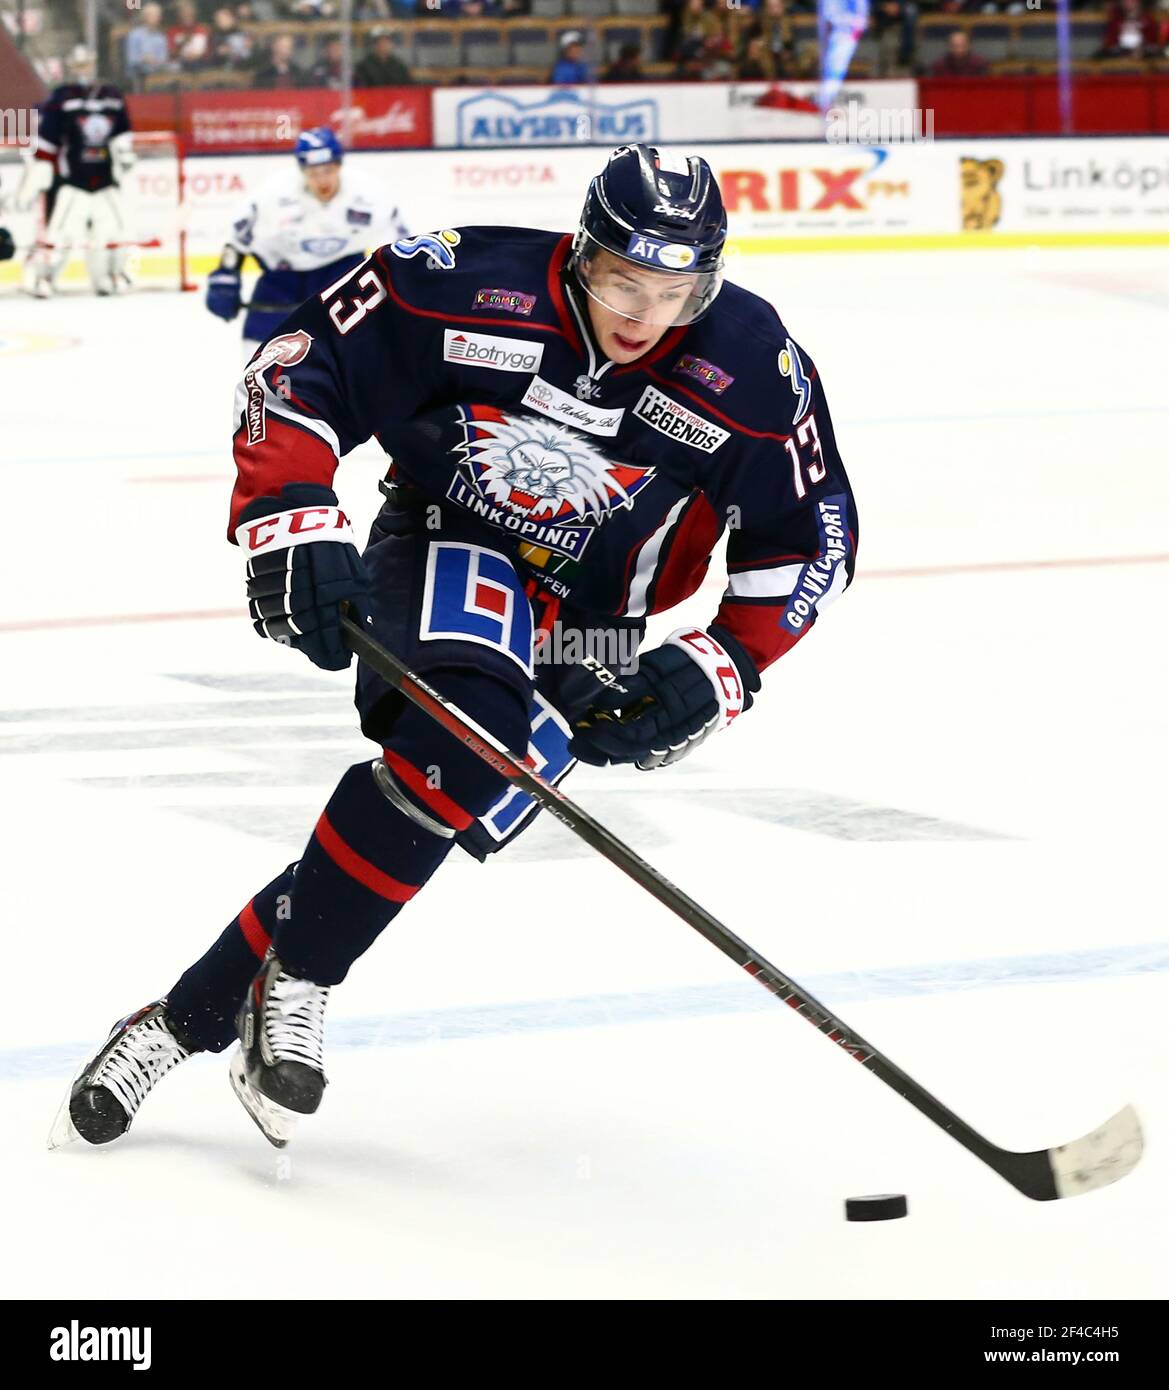 Jakub Vrana plays in intrasquad game for SHL's Linköping HC